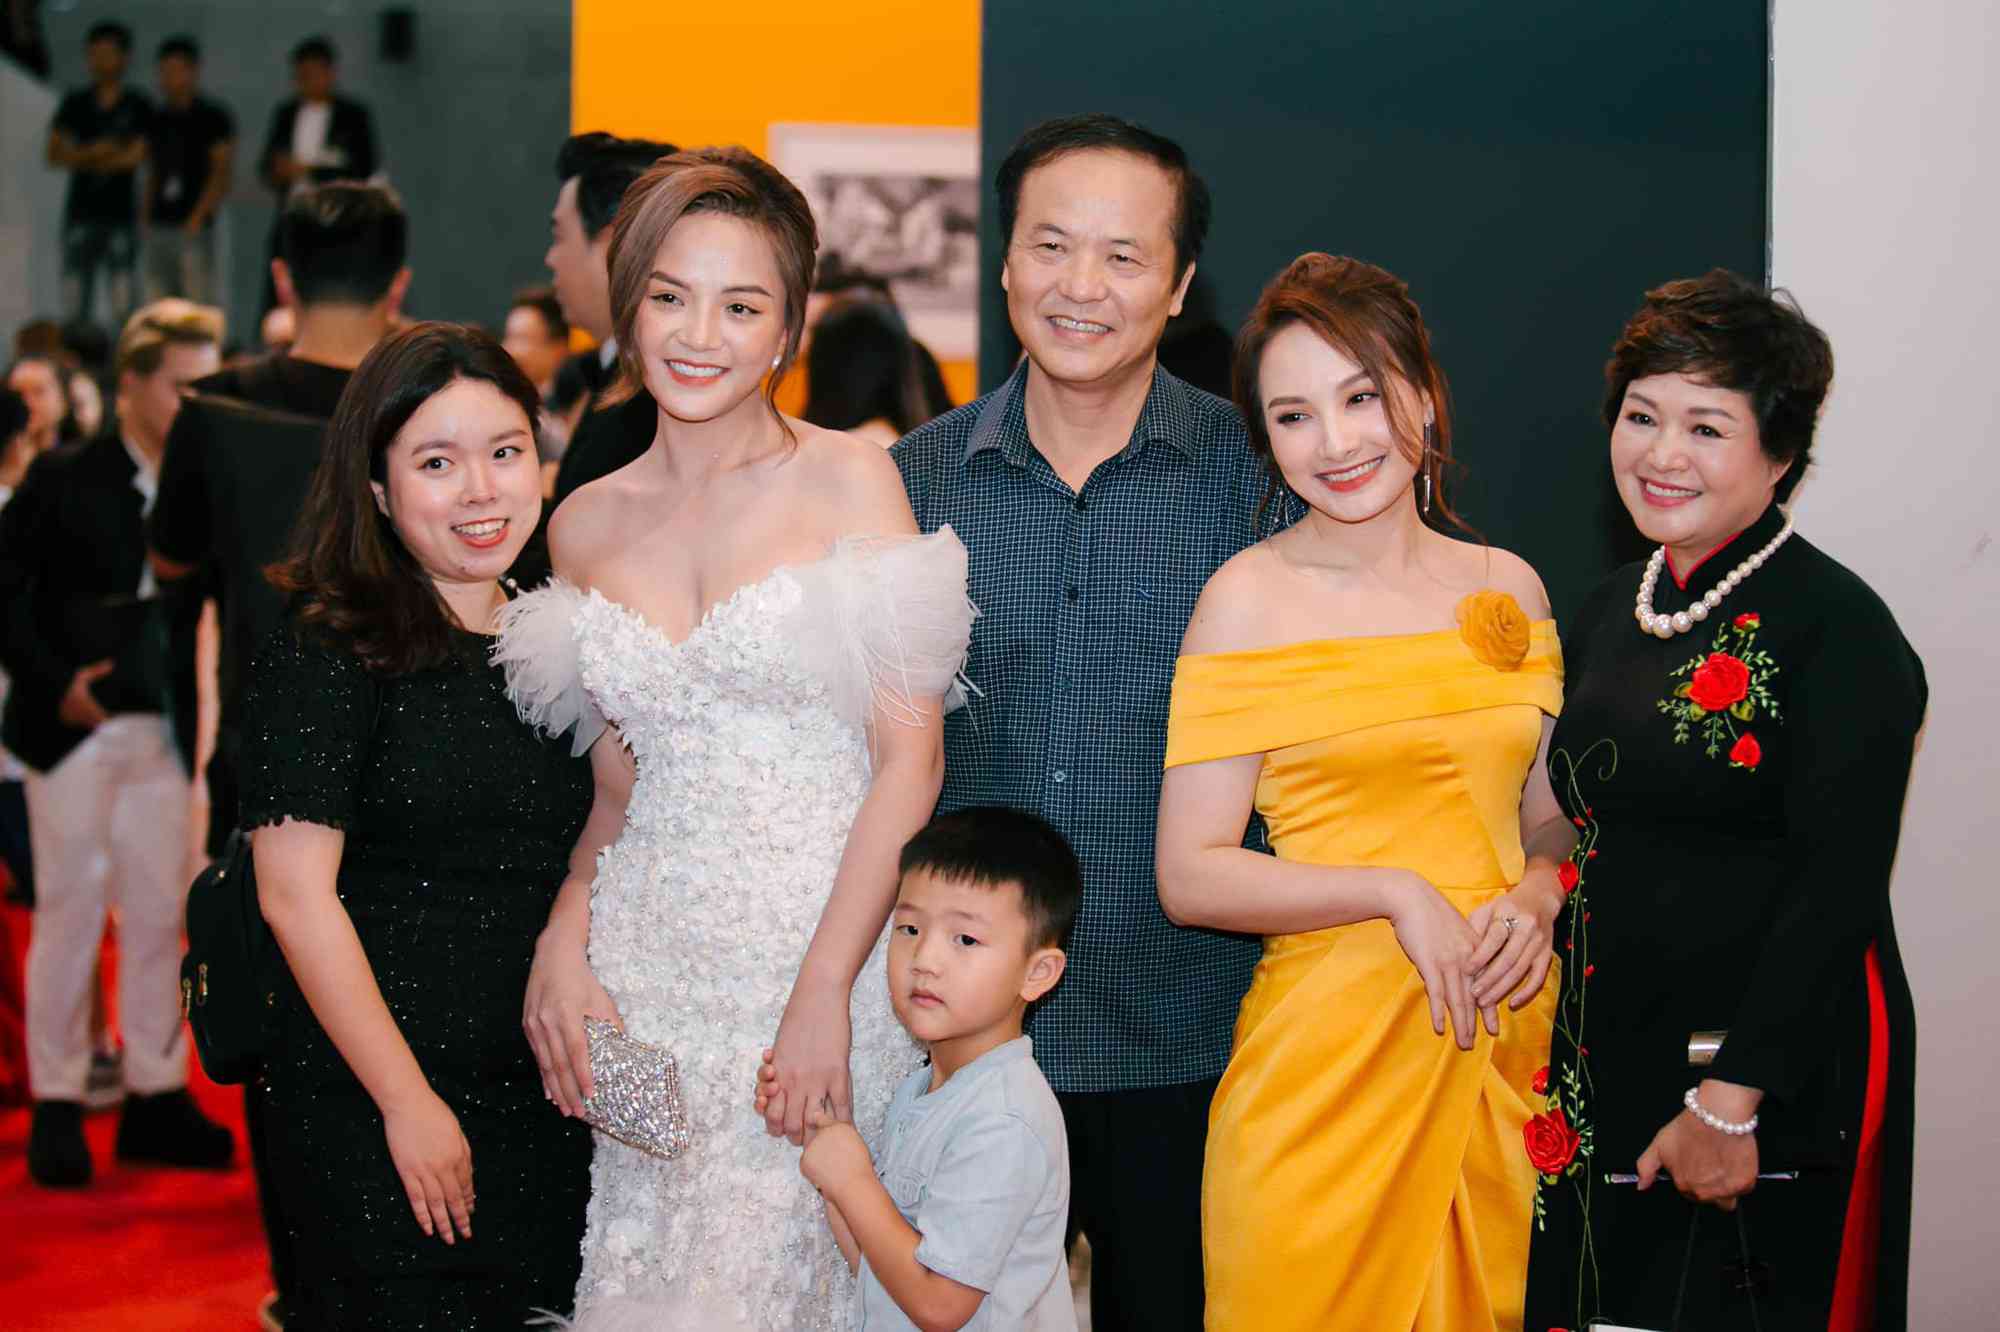 Hình ảnh Bảo Thanh chụp chung với gia đình Thu Quỳnh tại đêm trao giải VTV Awards 2019 được nữ diễn viên 1988 chia sẻ trên trang cá nhân. Ảnh: Facebook